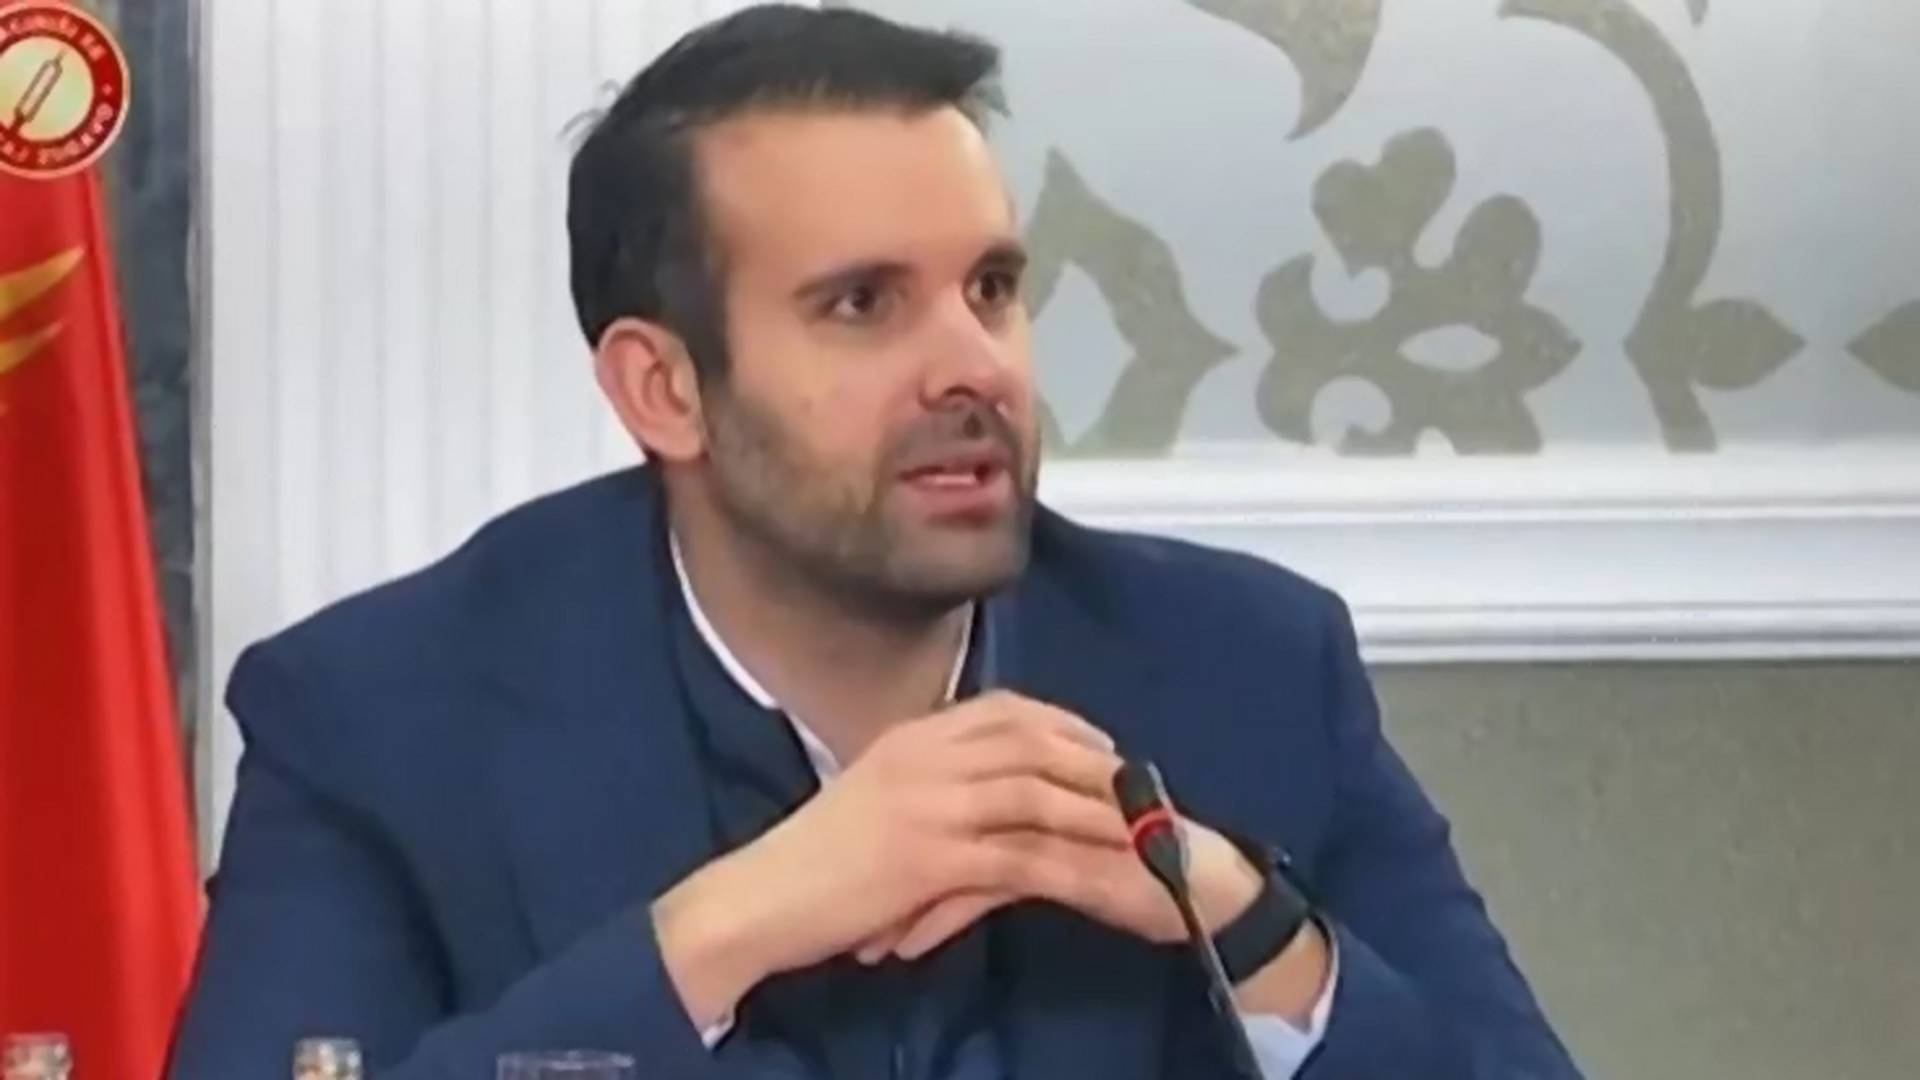 Crnogorski ministar postao hit na mrežama jer se od optužbi da je nacionalista branio spiskom partnerki koje je imao